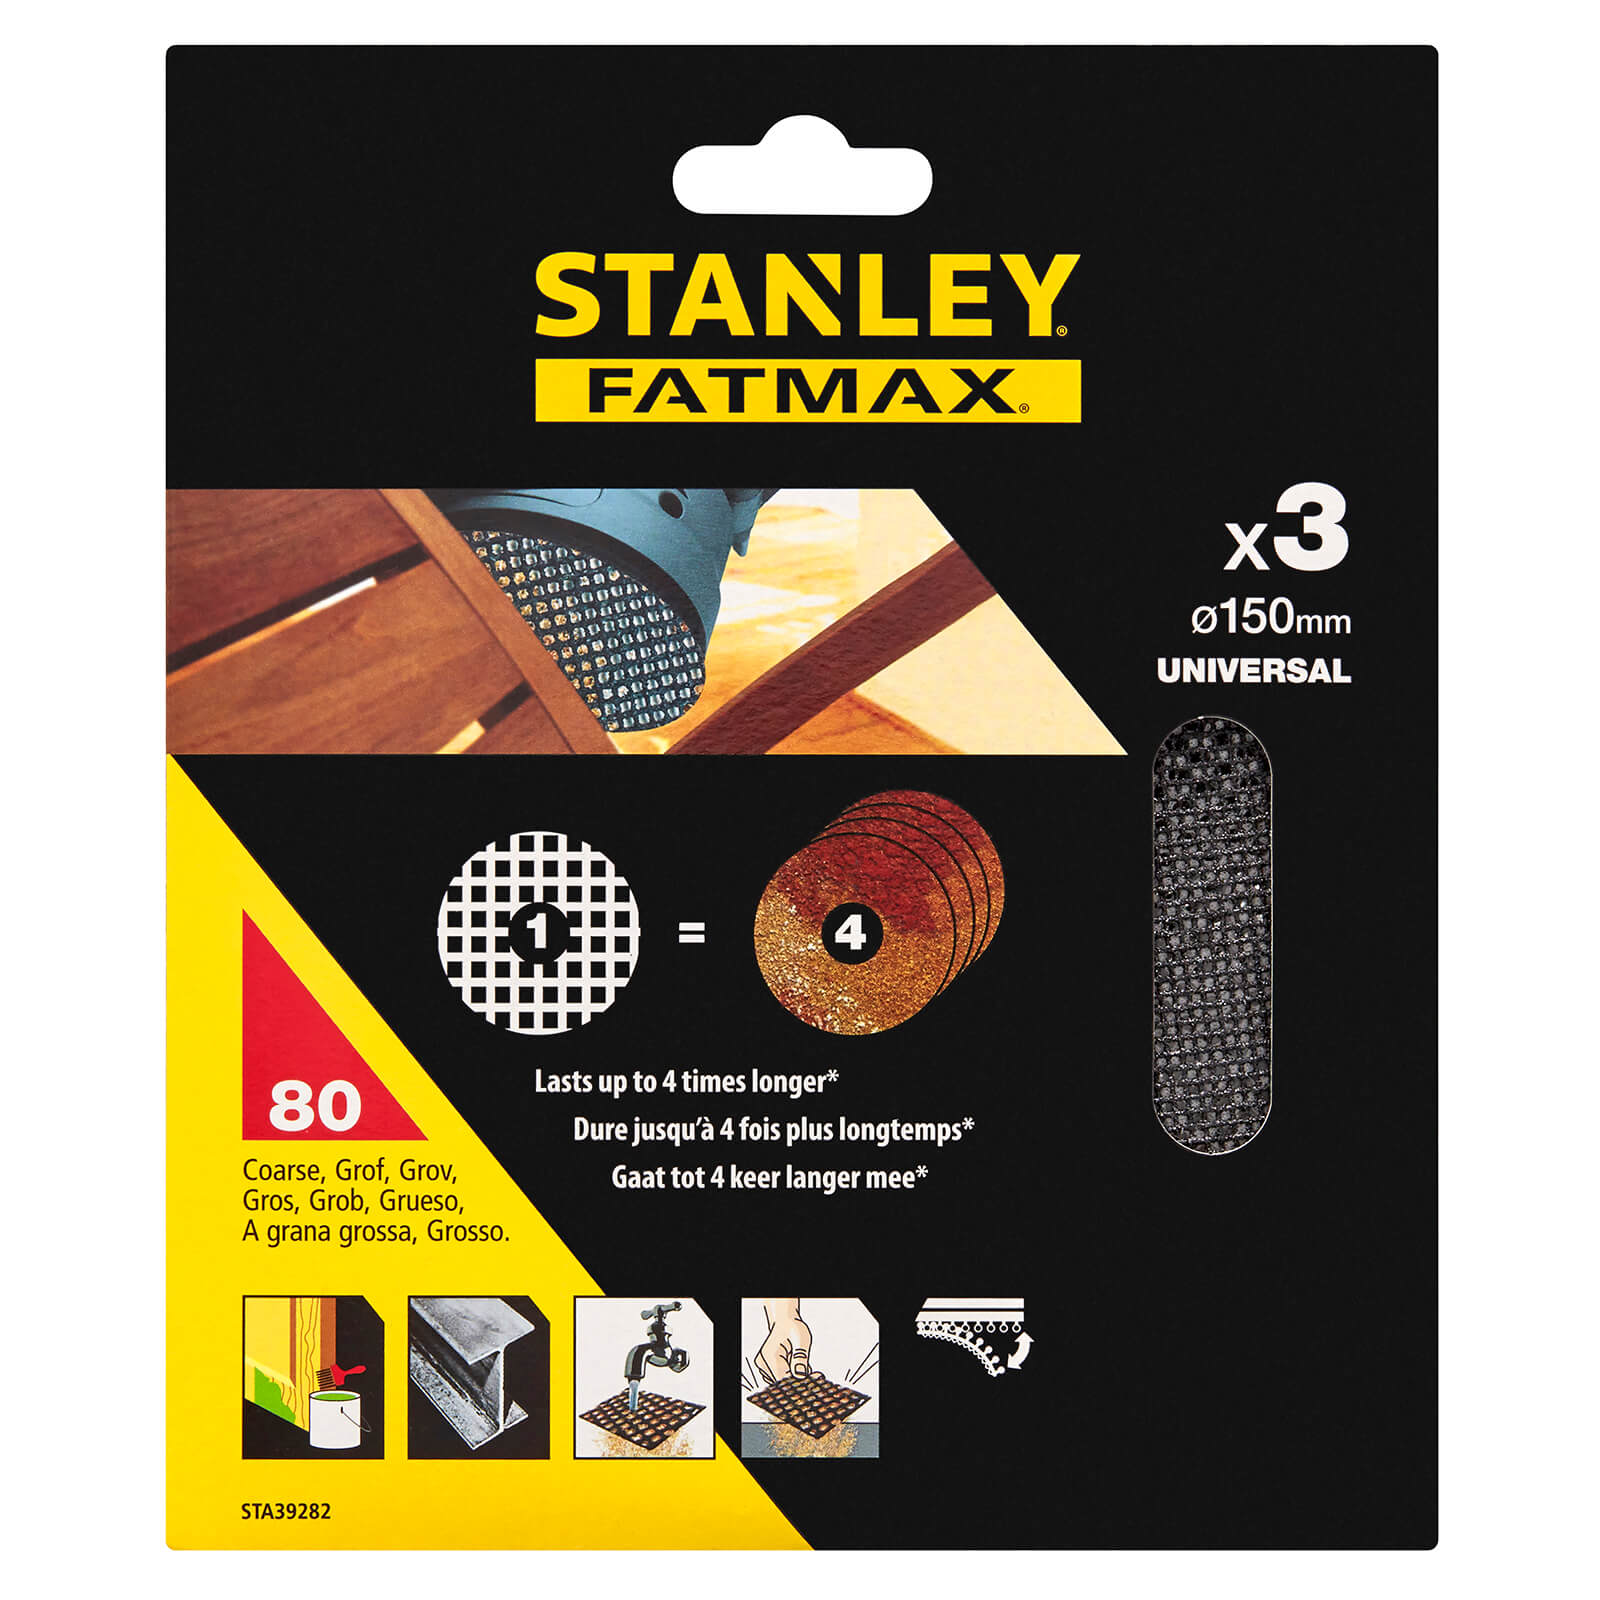 STANLEY FATMAX - 3x 80g Quick Fit Random Oribital Sanding Mesh Discs 150mm